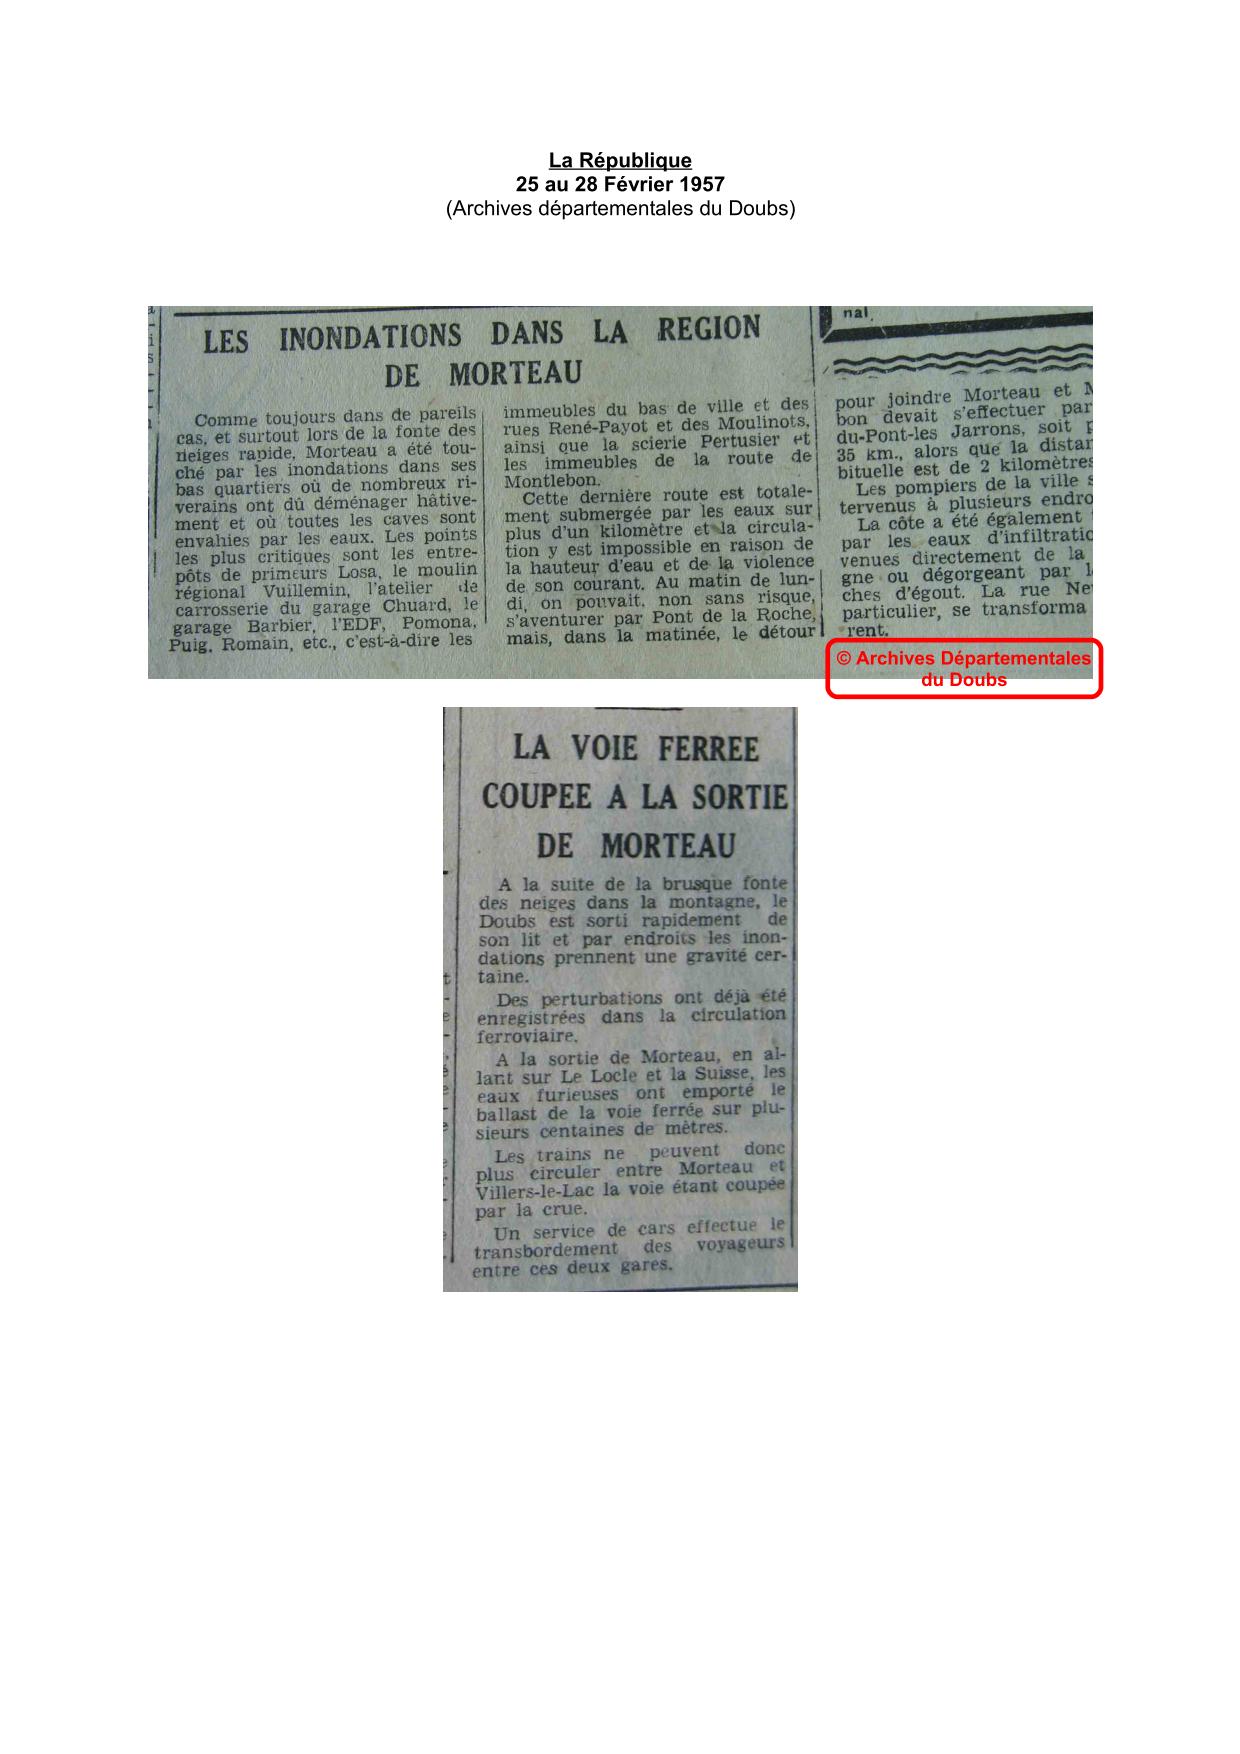 Journal - La République - 1957 - Région de Morteau